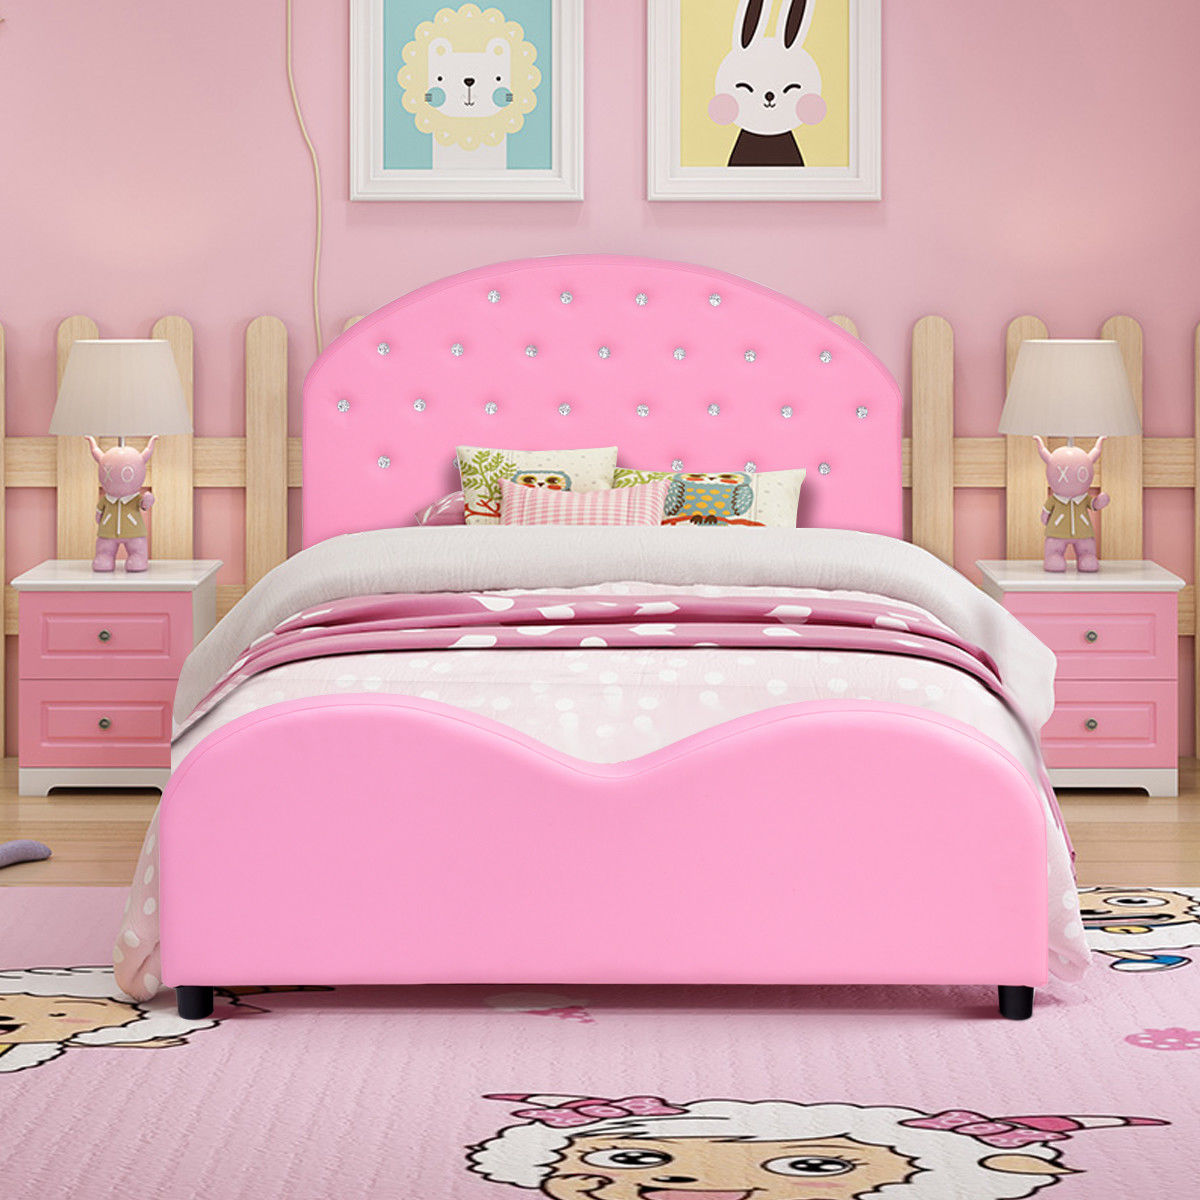 Costway Kids Children PU Upholstered Platform Wooden Princess Bed Bedroom Furniture Pink - image 2 of 9